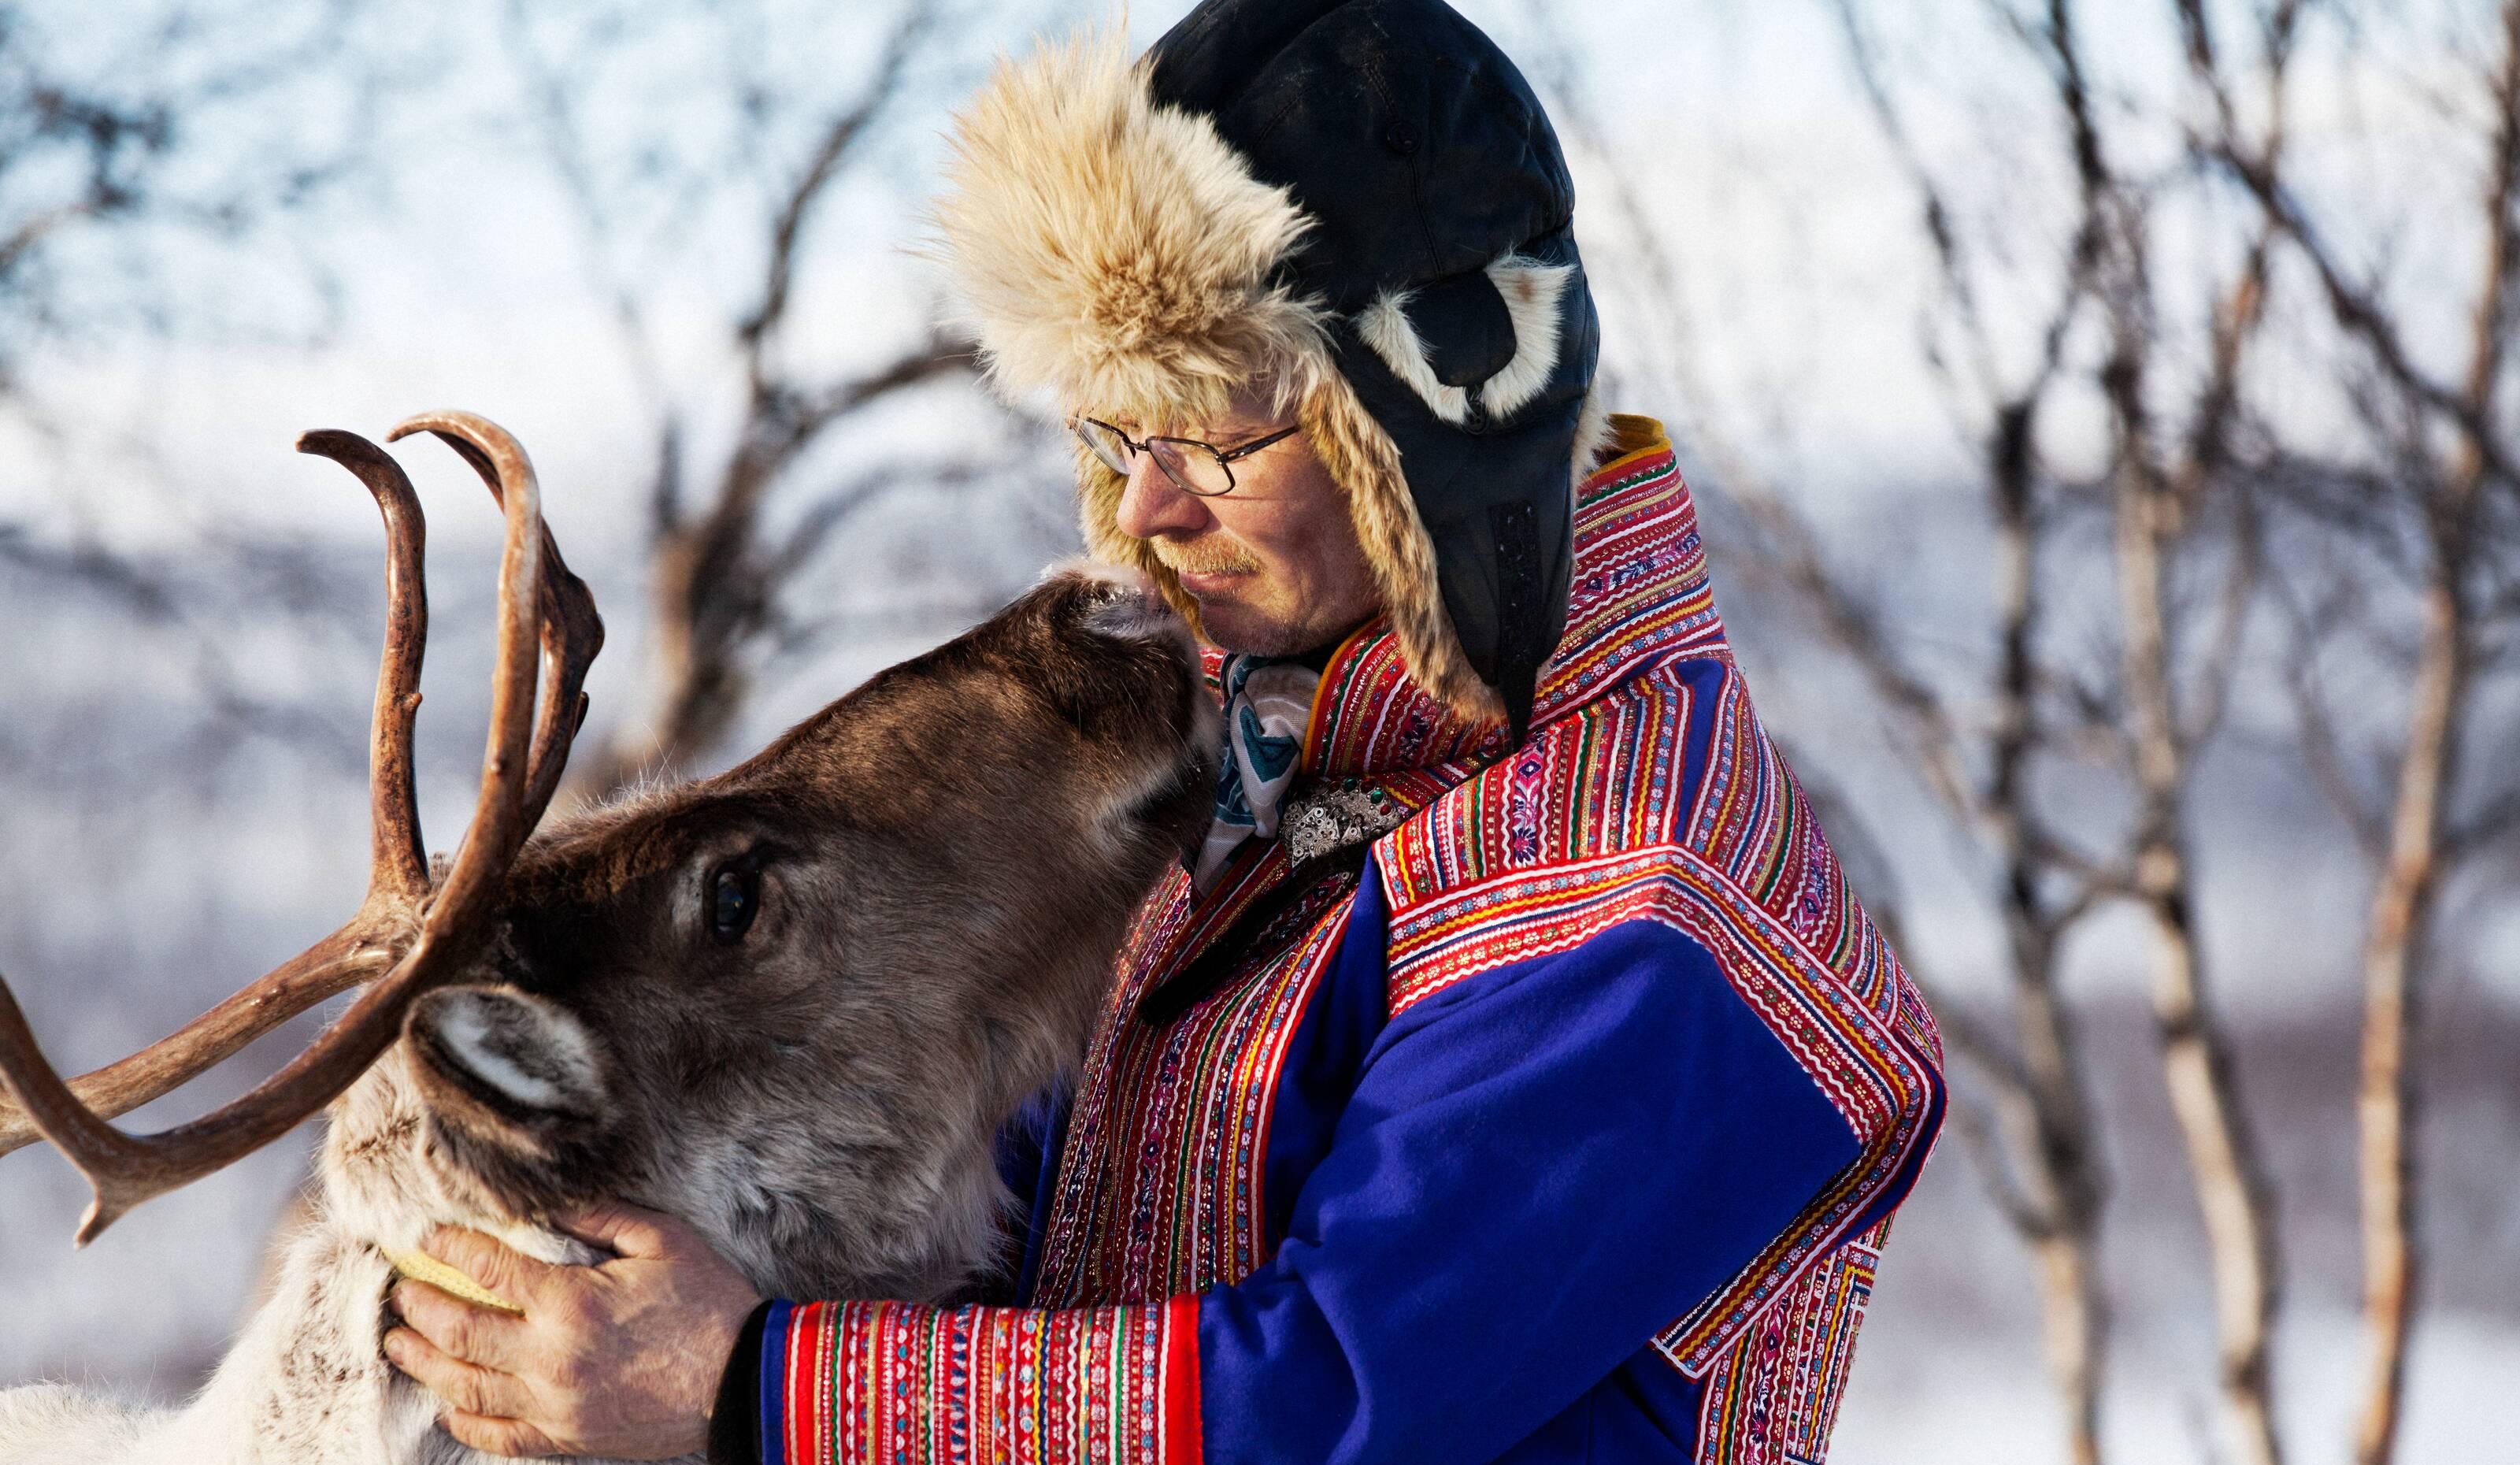 Un uomo Sami e la sua renna